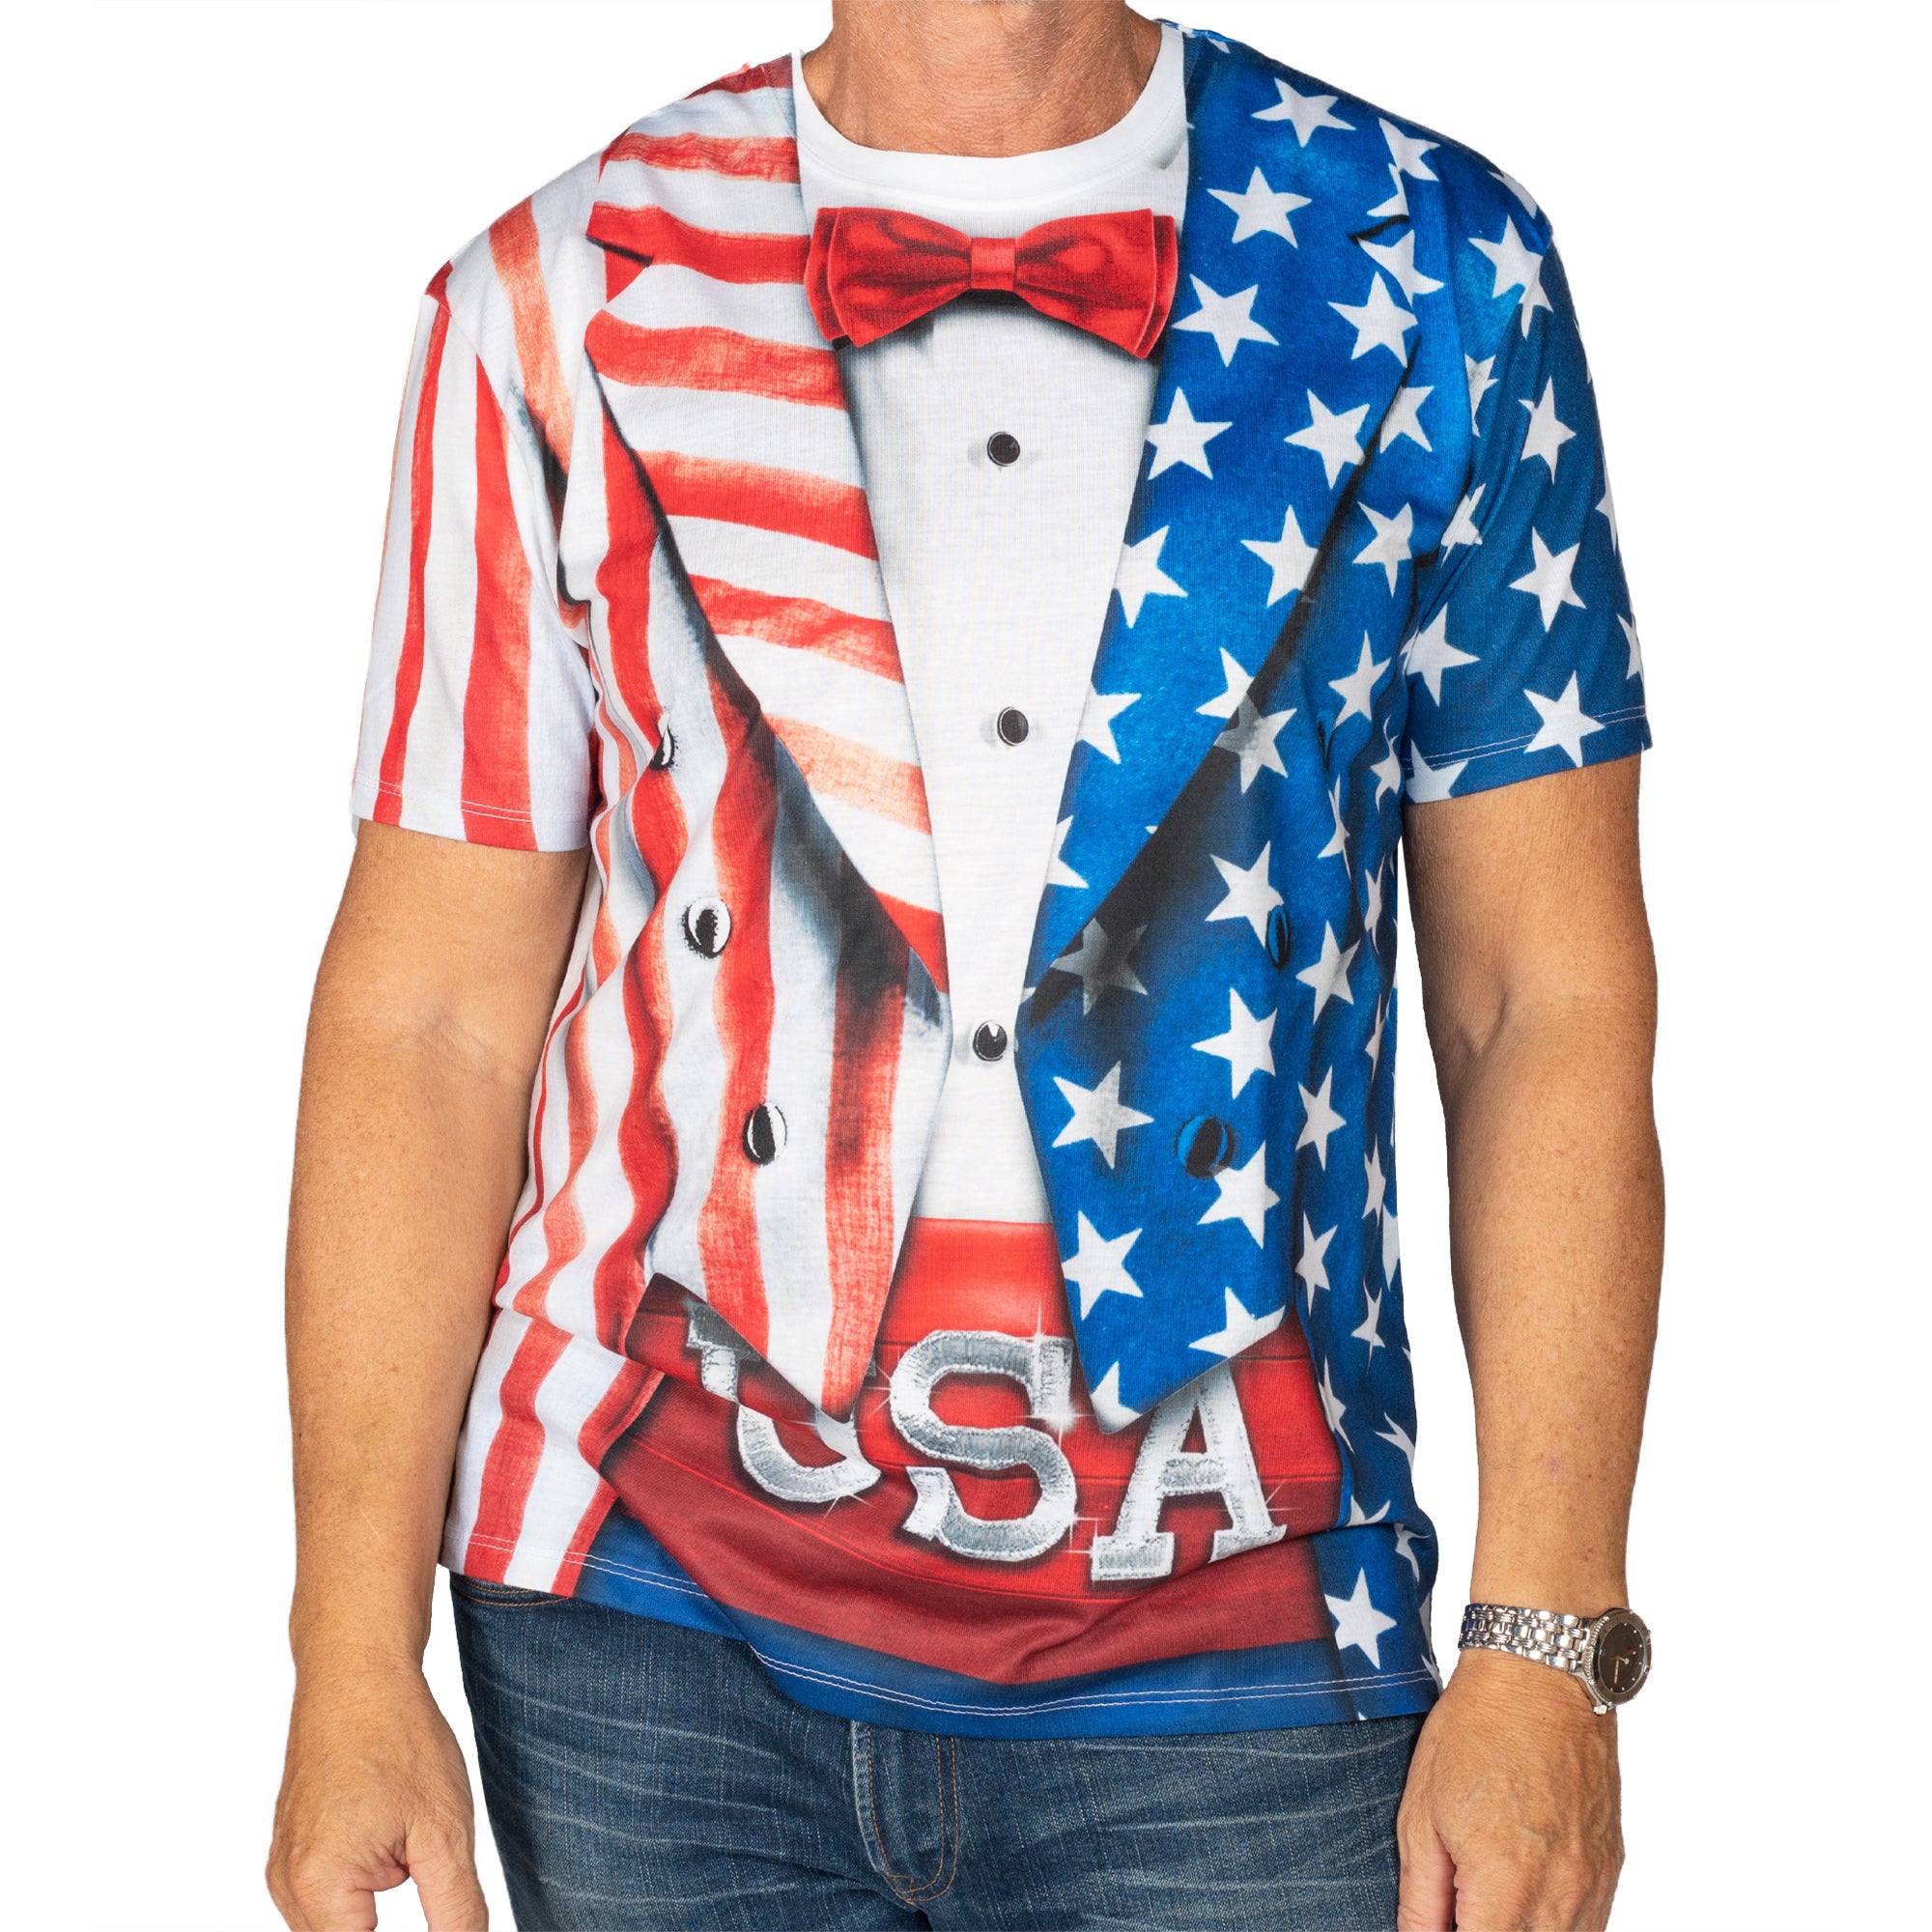 Men's American Flag Tuxedo T-Shirt – The Flag Shirt